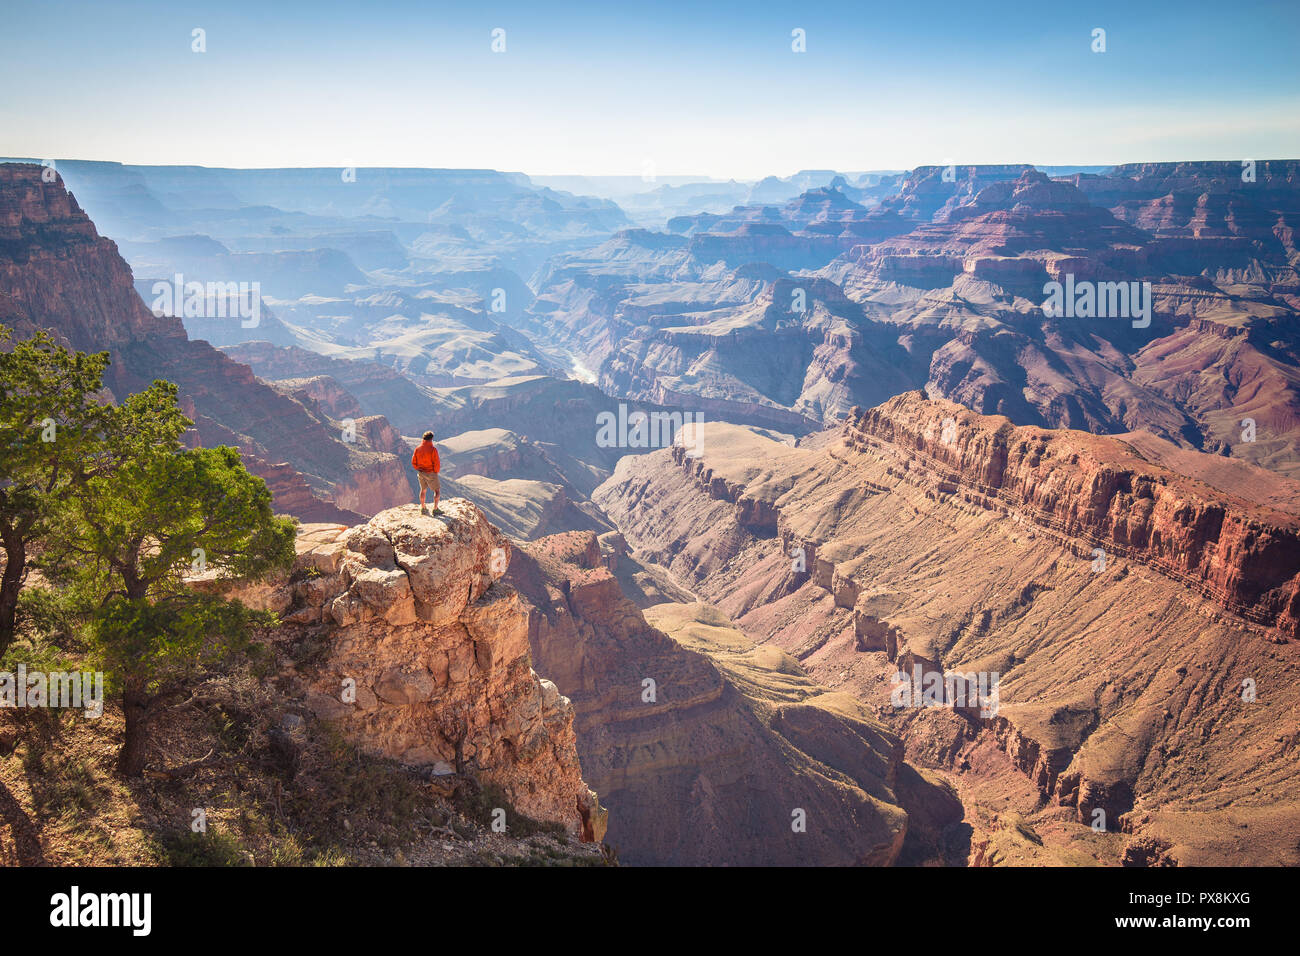 Un male hiker est debout sur une falaise abrupte en profitant de la magnifique vue sur la célèbre Grand Canyon sur une belle journée ensoleillée avec ciel bleu en été, grand Banque D'Images